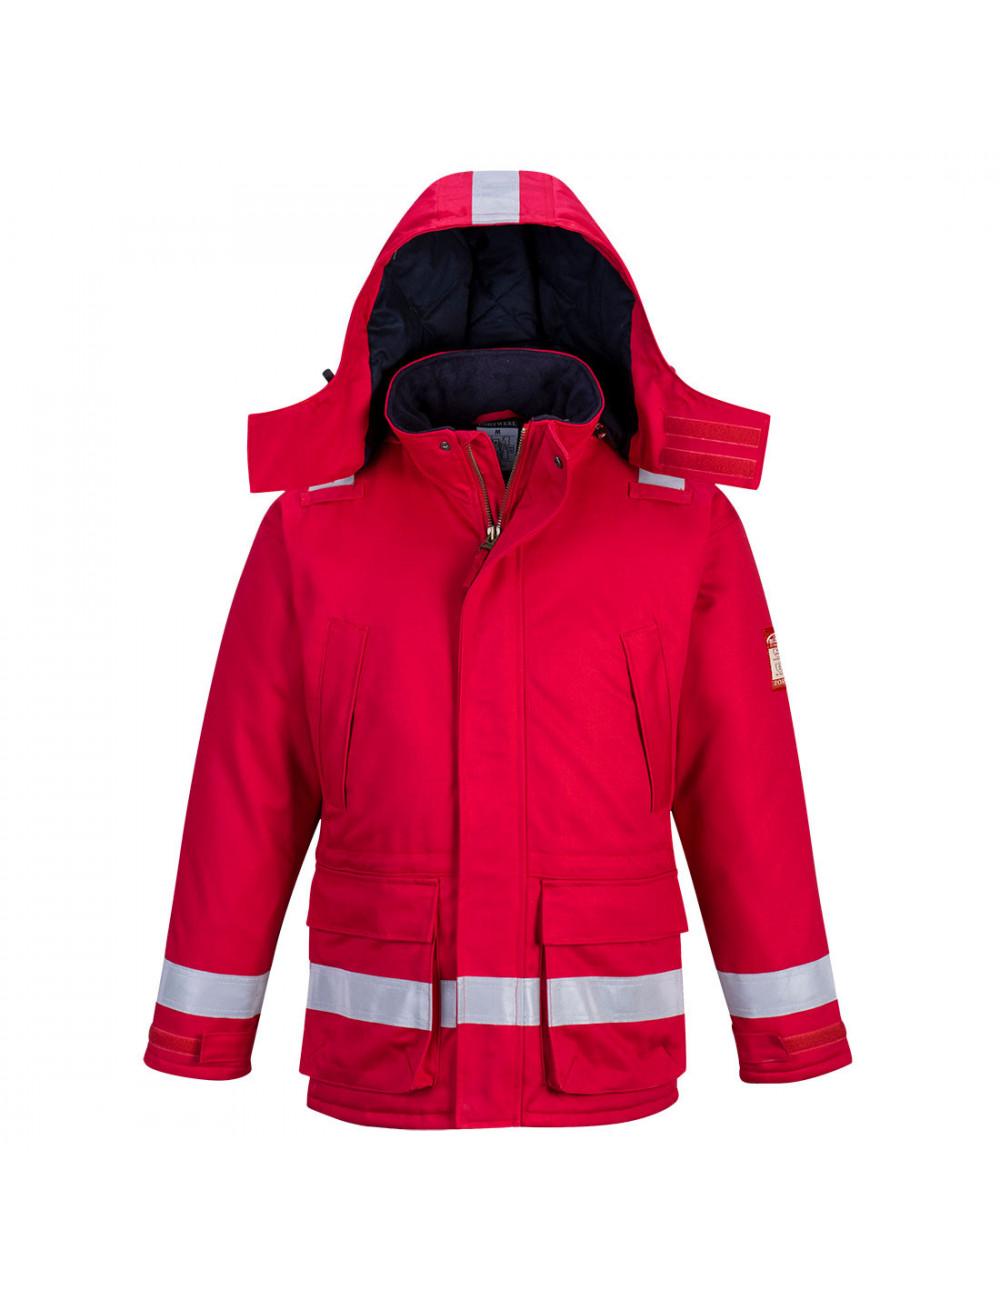 Trudnopalna i antystatyczna kurtka zimowa czerwony Portwest